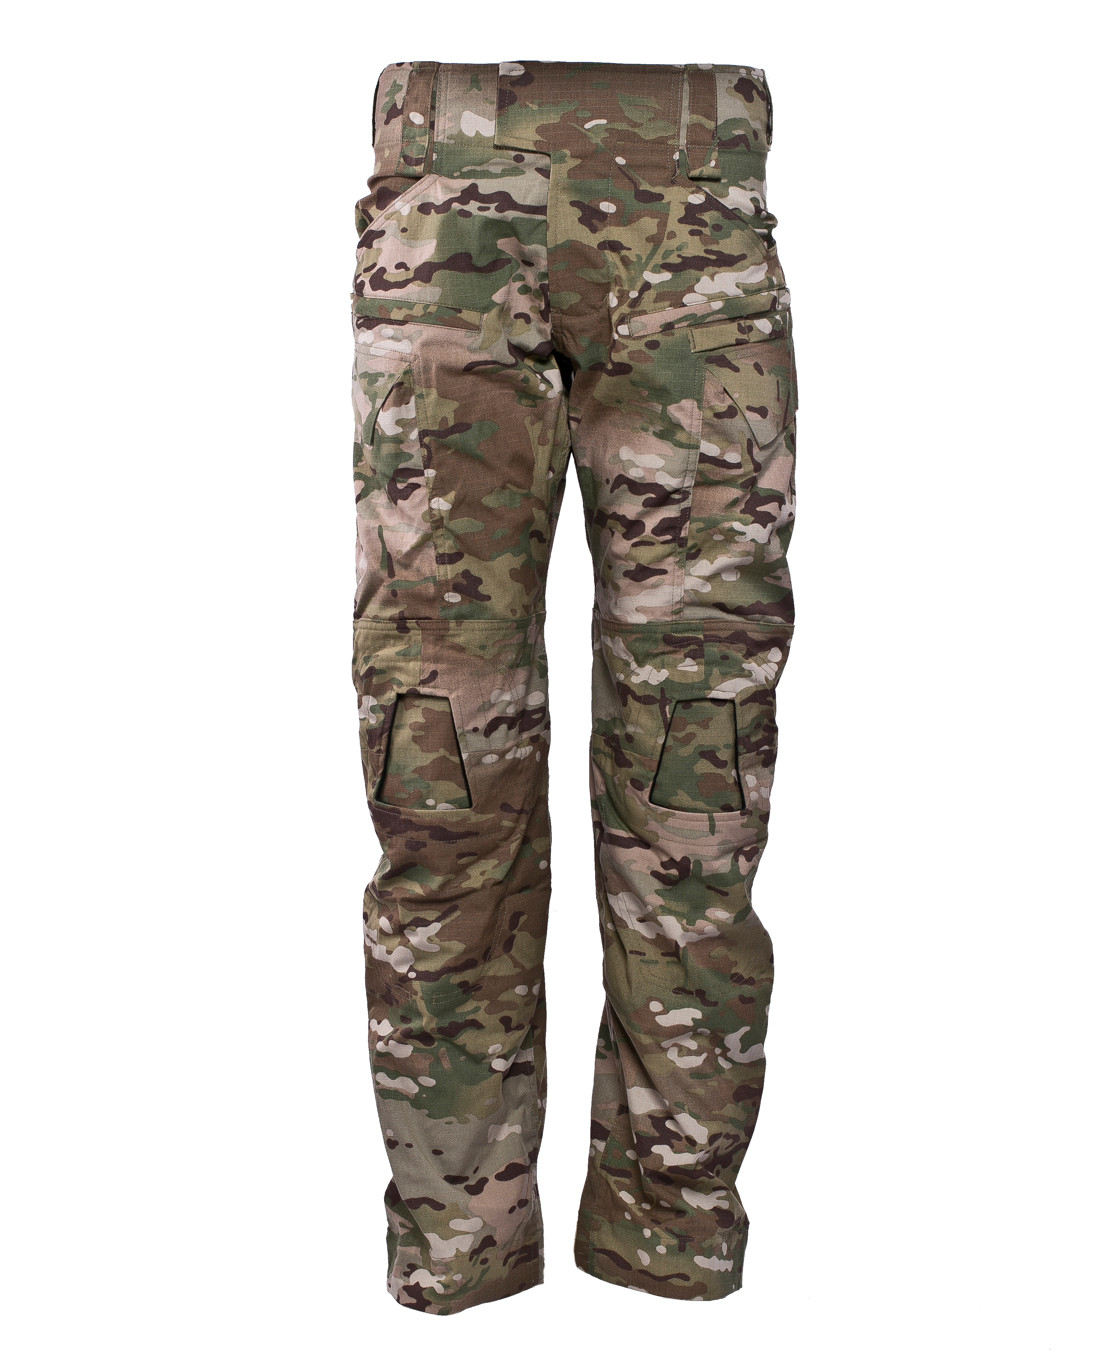 Тактические брюки Crye Precision G4 Combat Pants Multicam тактические брюки uf pro striker ult brown grey